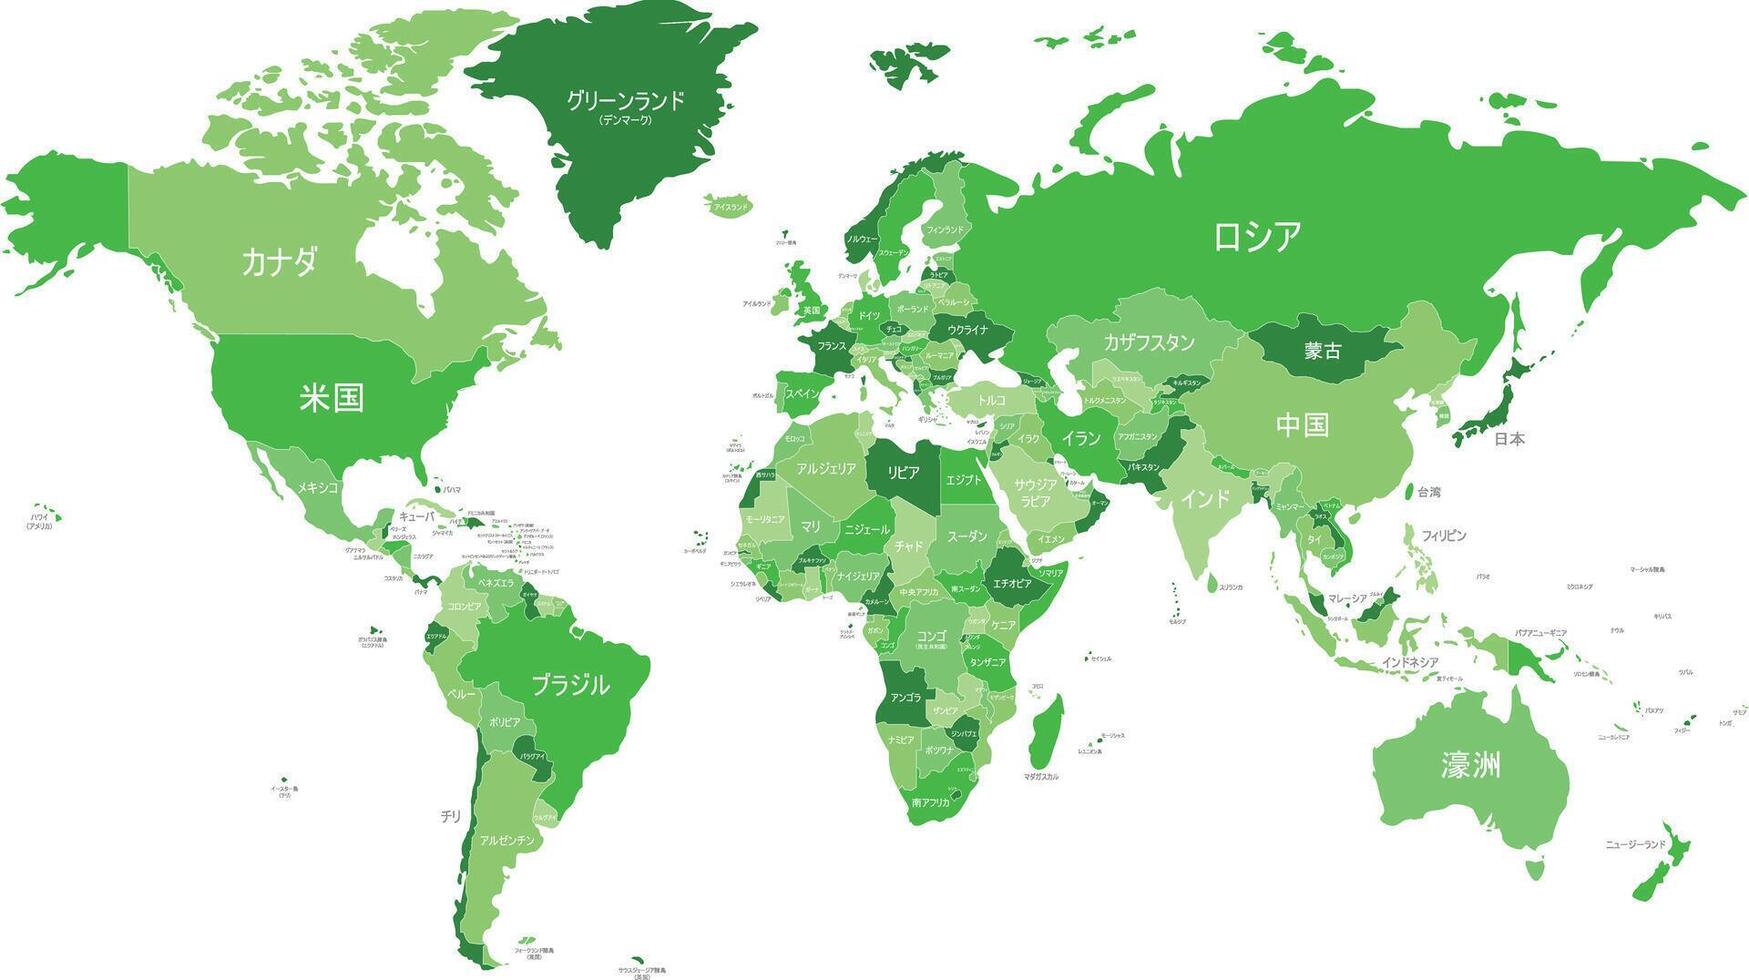 politisk värld Karta vektor illustration med annorlunda toner av grön för varje Land och Land namn i japanska. redigerbar och klart märkt skikten.